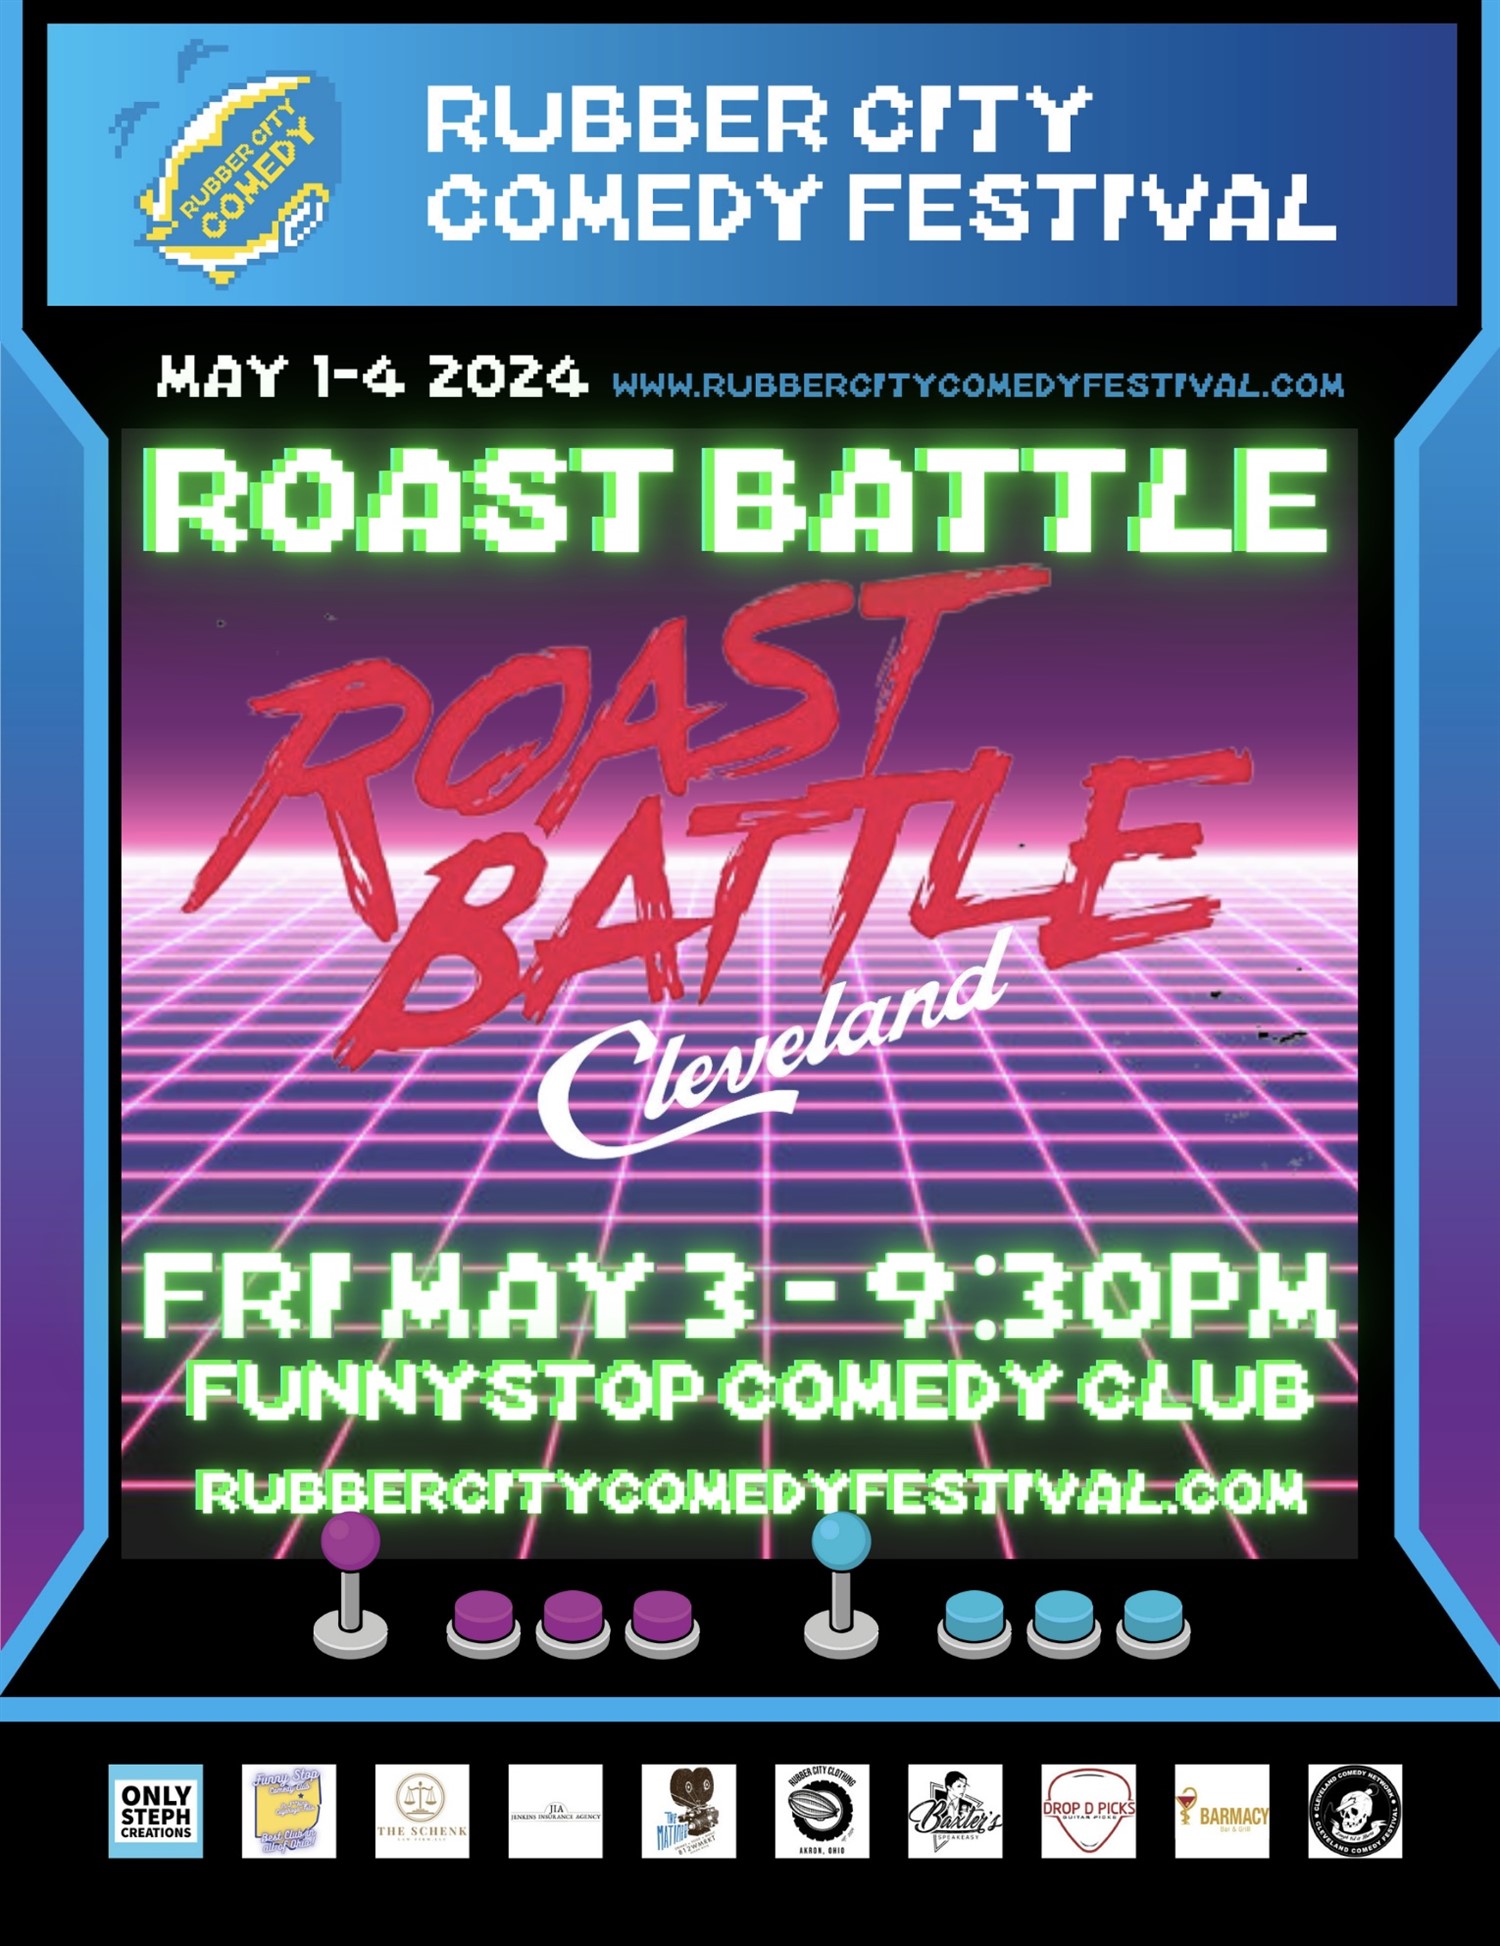 ROAST BATTLE CLEVELAND | 9:30 PM | Rubber City Comedy Festival Funny Stop Comedy Club on may. 03, 21:30@Funny Stop Comedy Club - Compra entradas y obtén información enFunny Stop funnystop.online